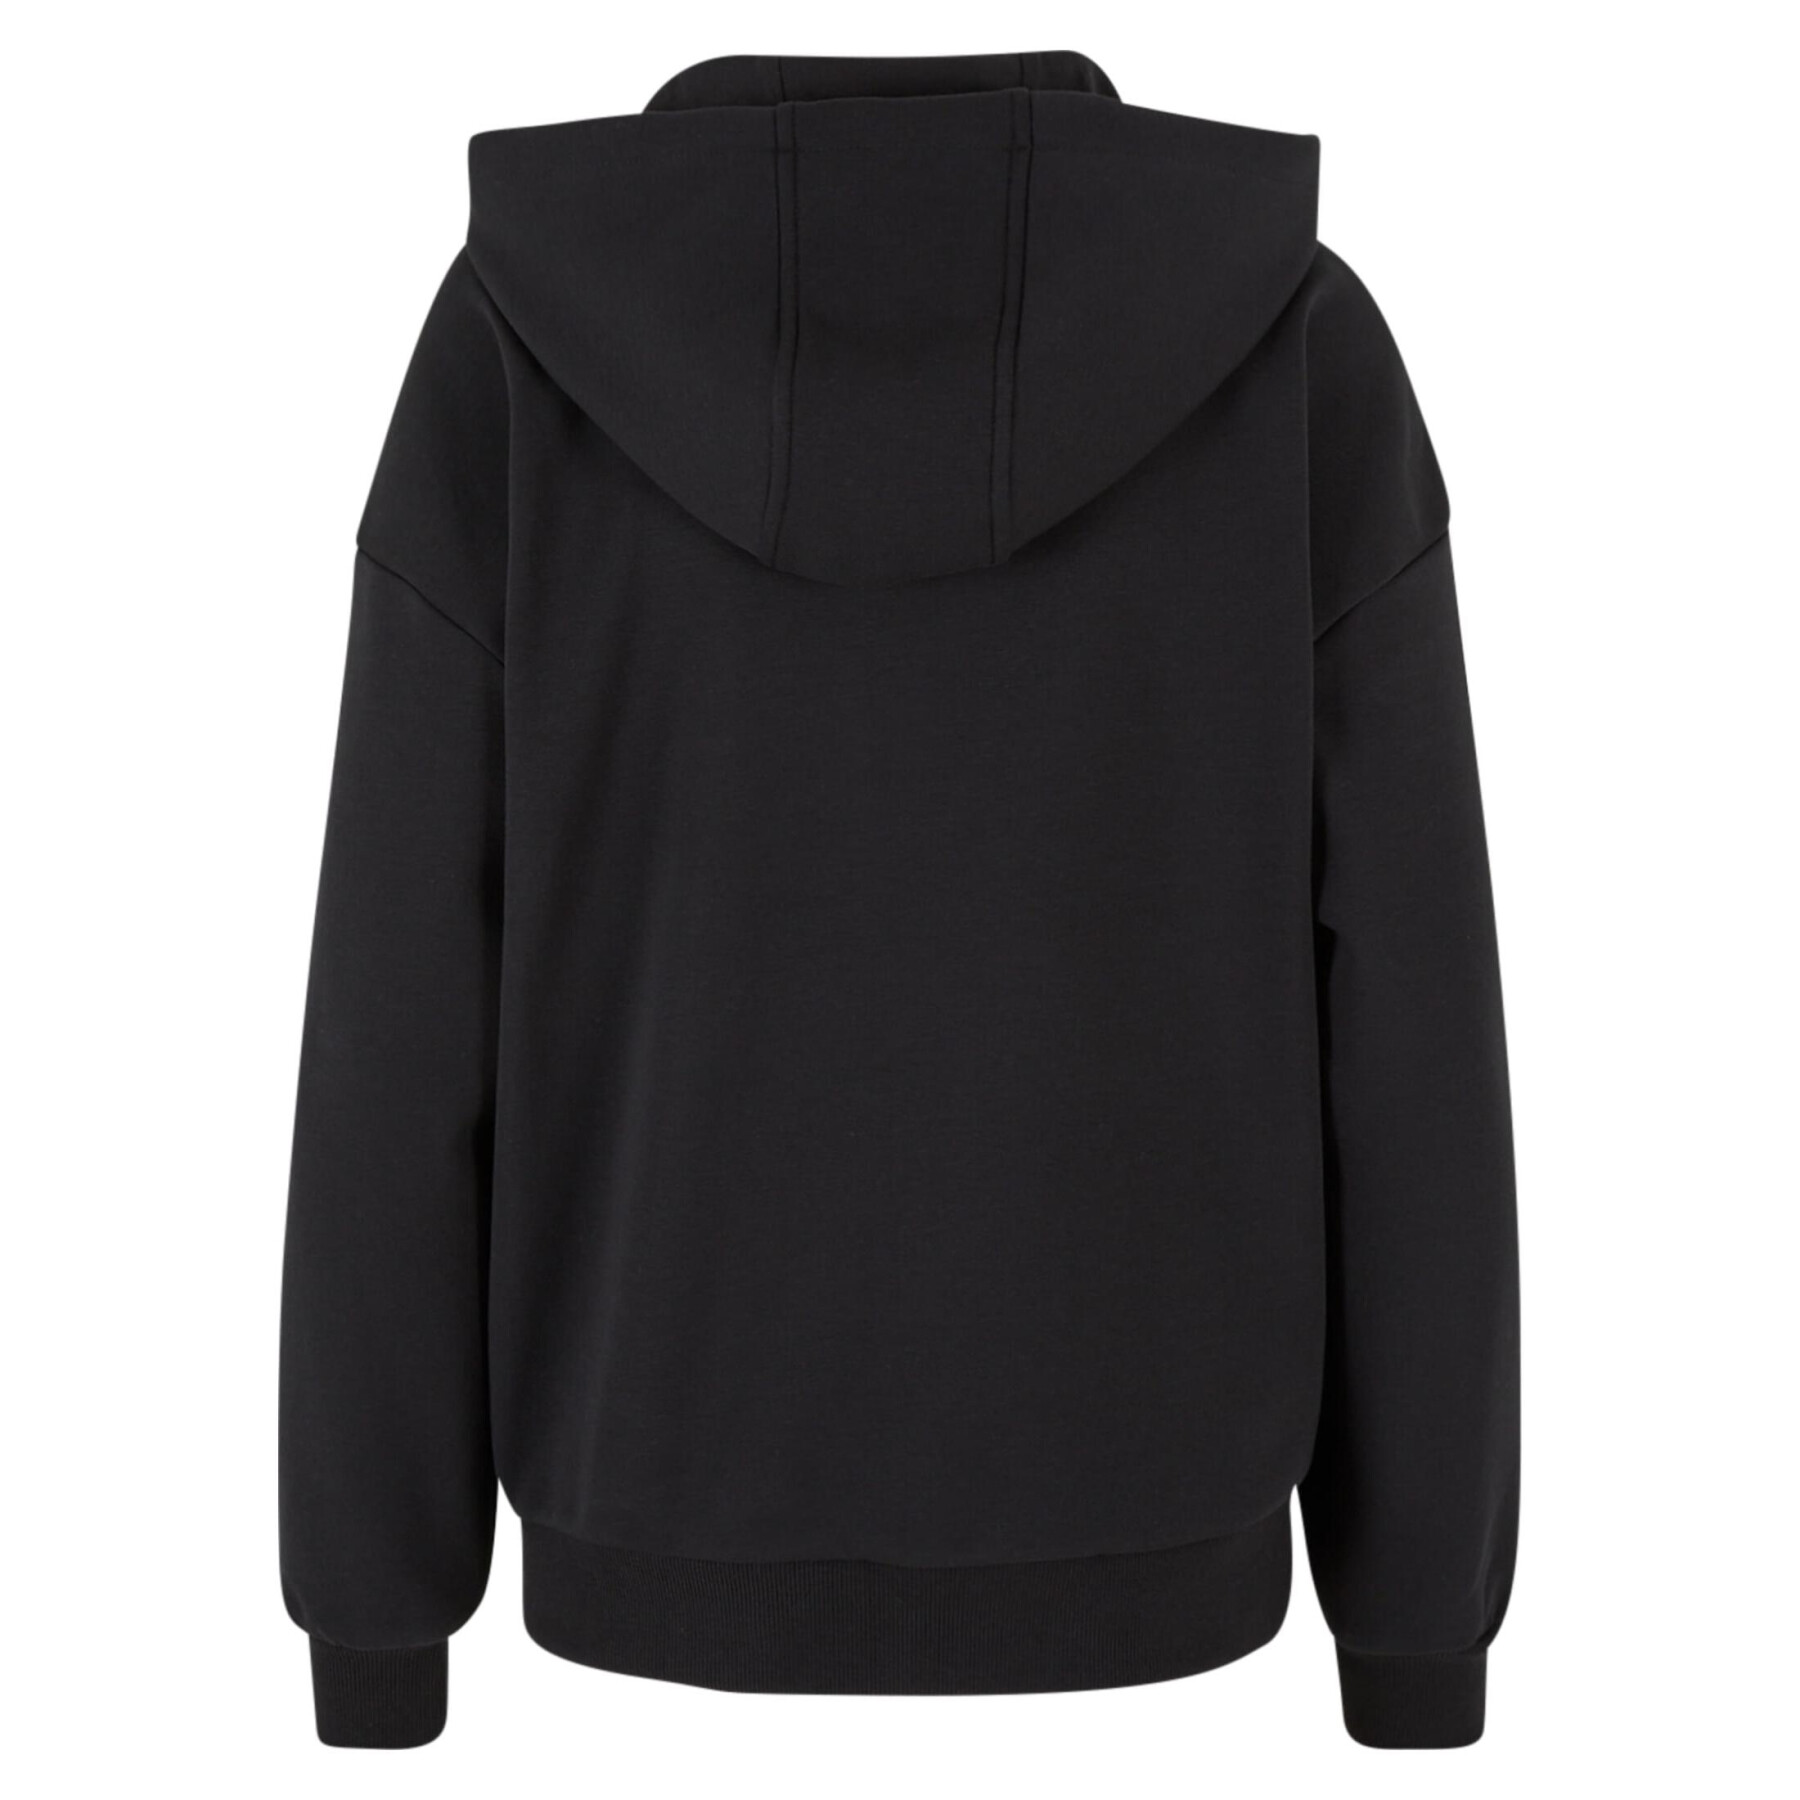 Women's oversized hooded zip sweatshirt Urban Classics Cozy